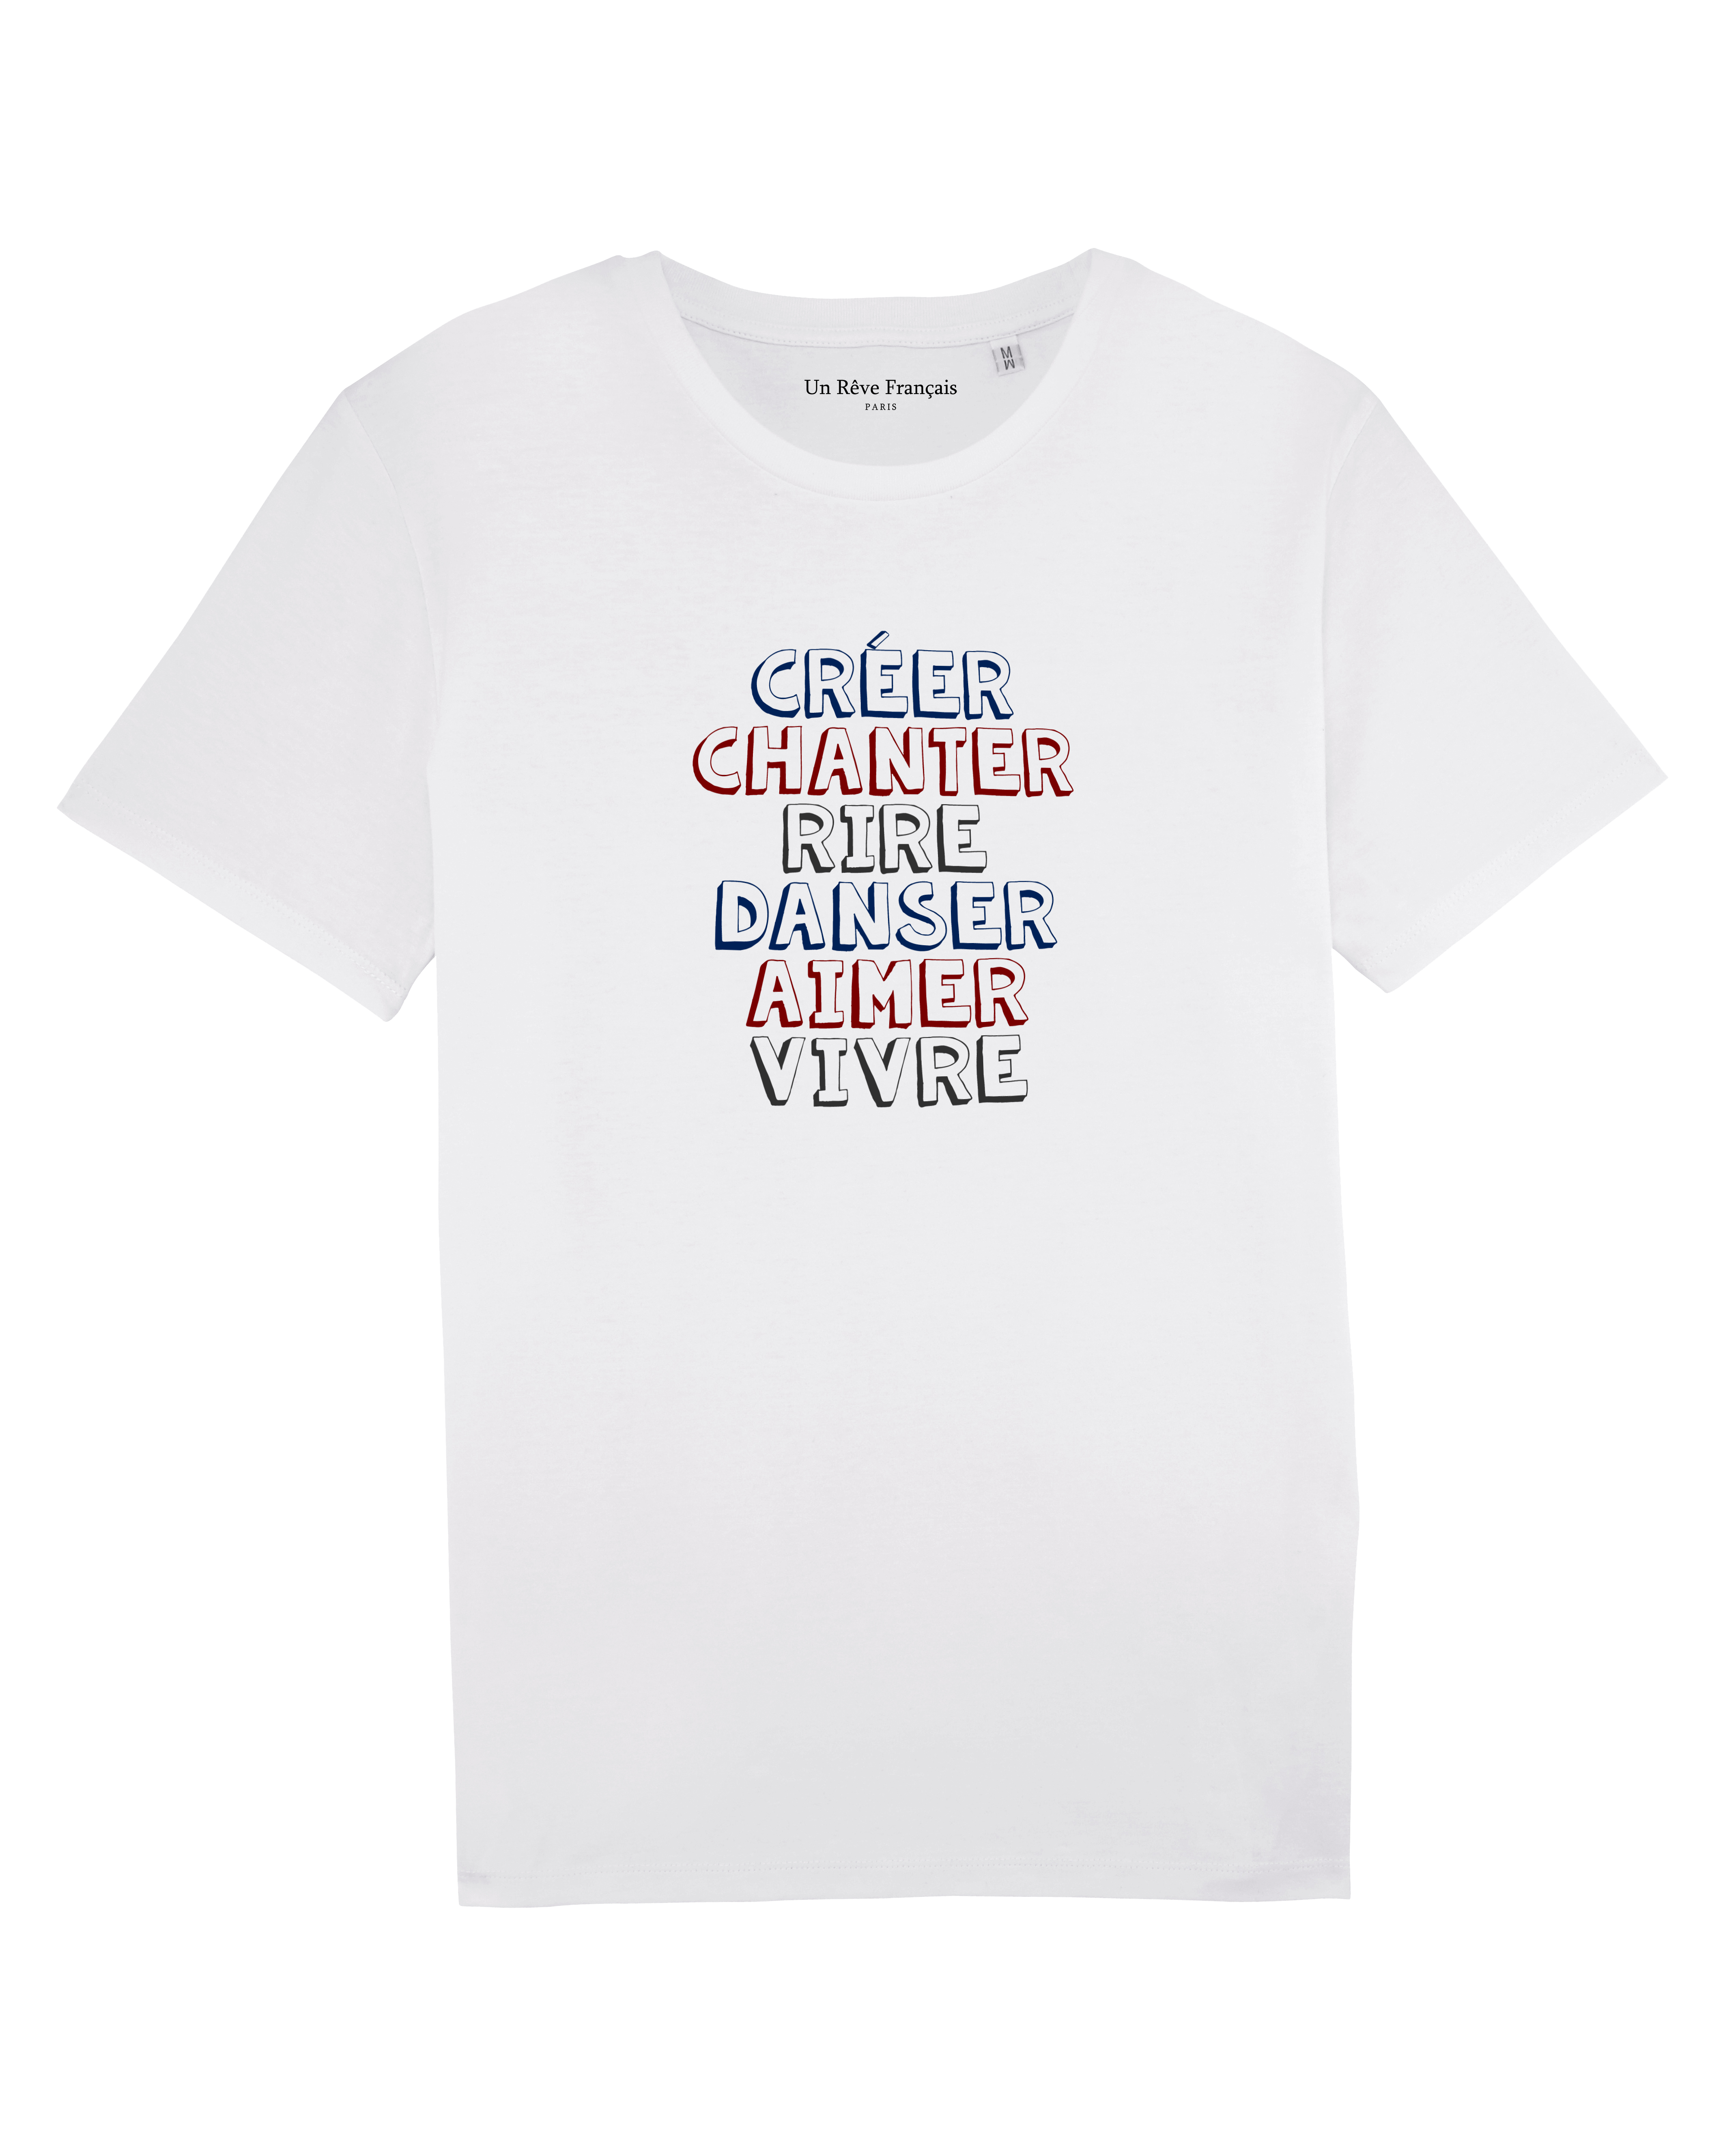 T-shirt "Créer chanter rire danser aimer vivre"